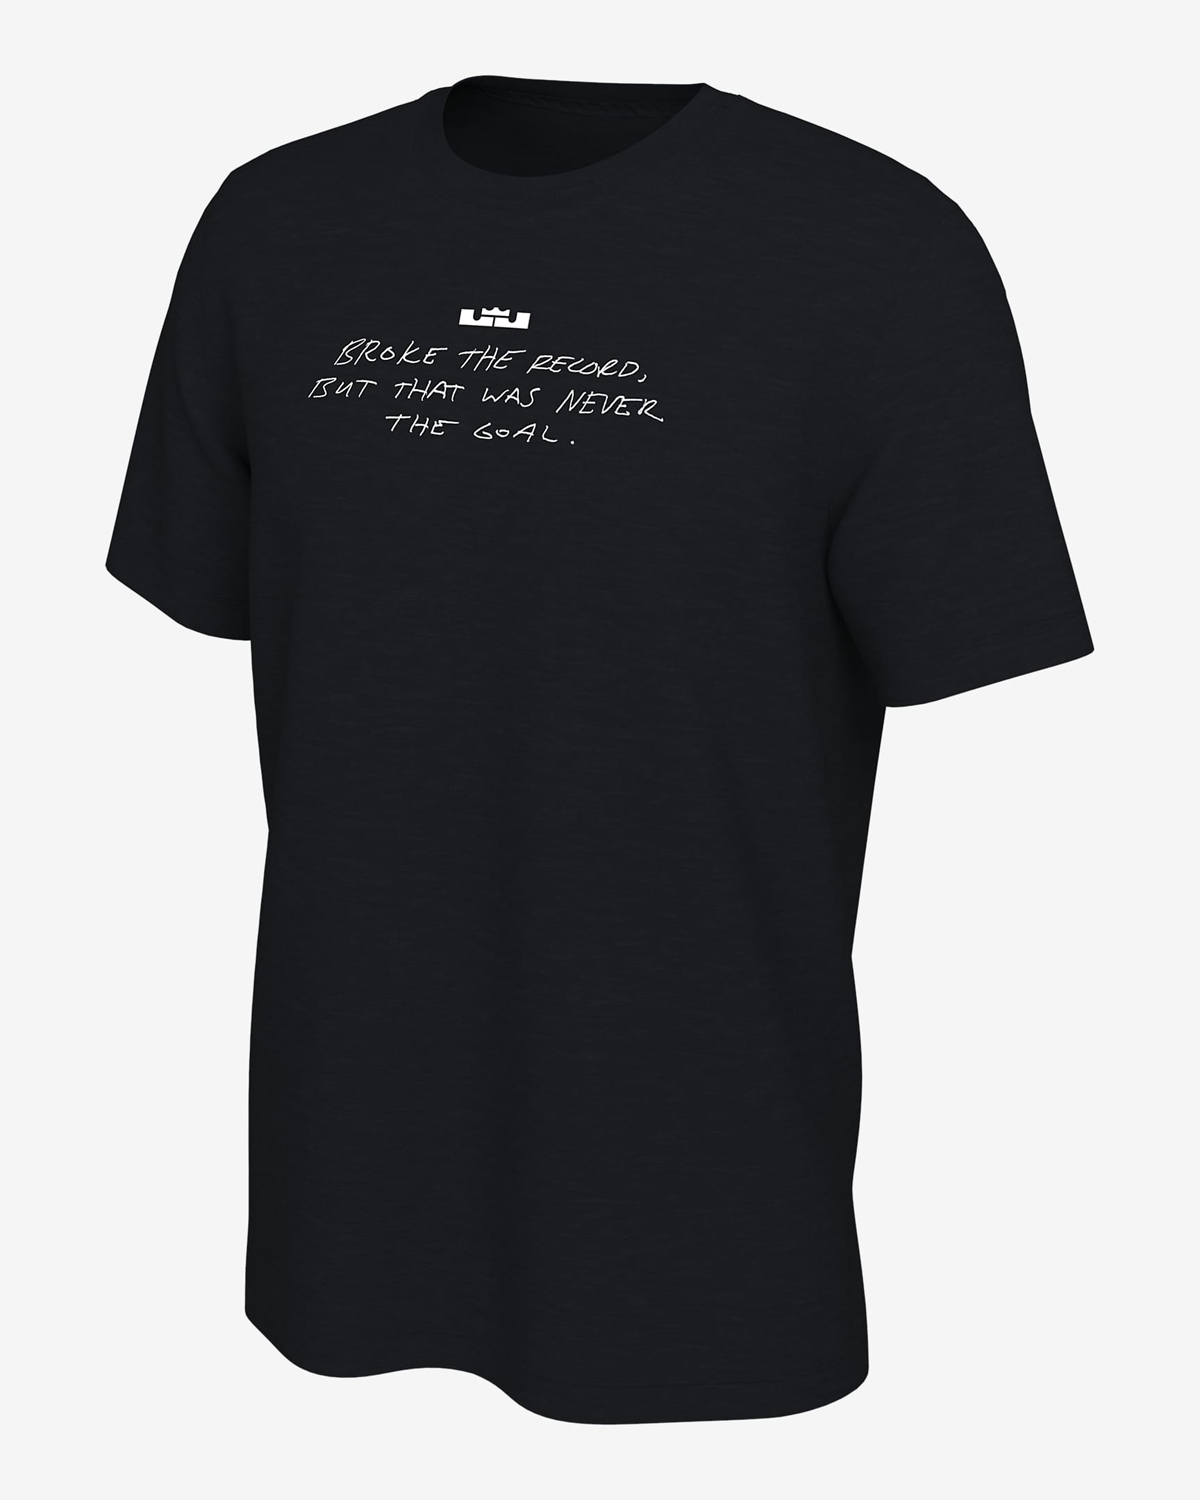 Nike-LeBron-Scoring-Record-T-Shirt-1